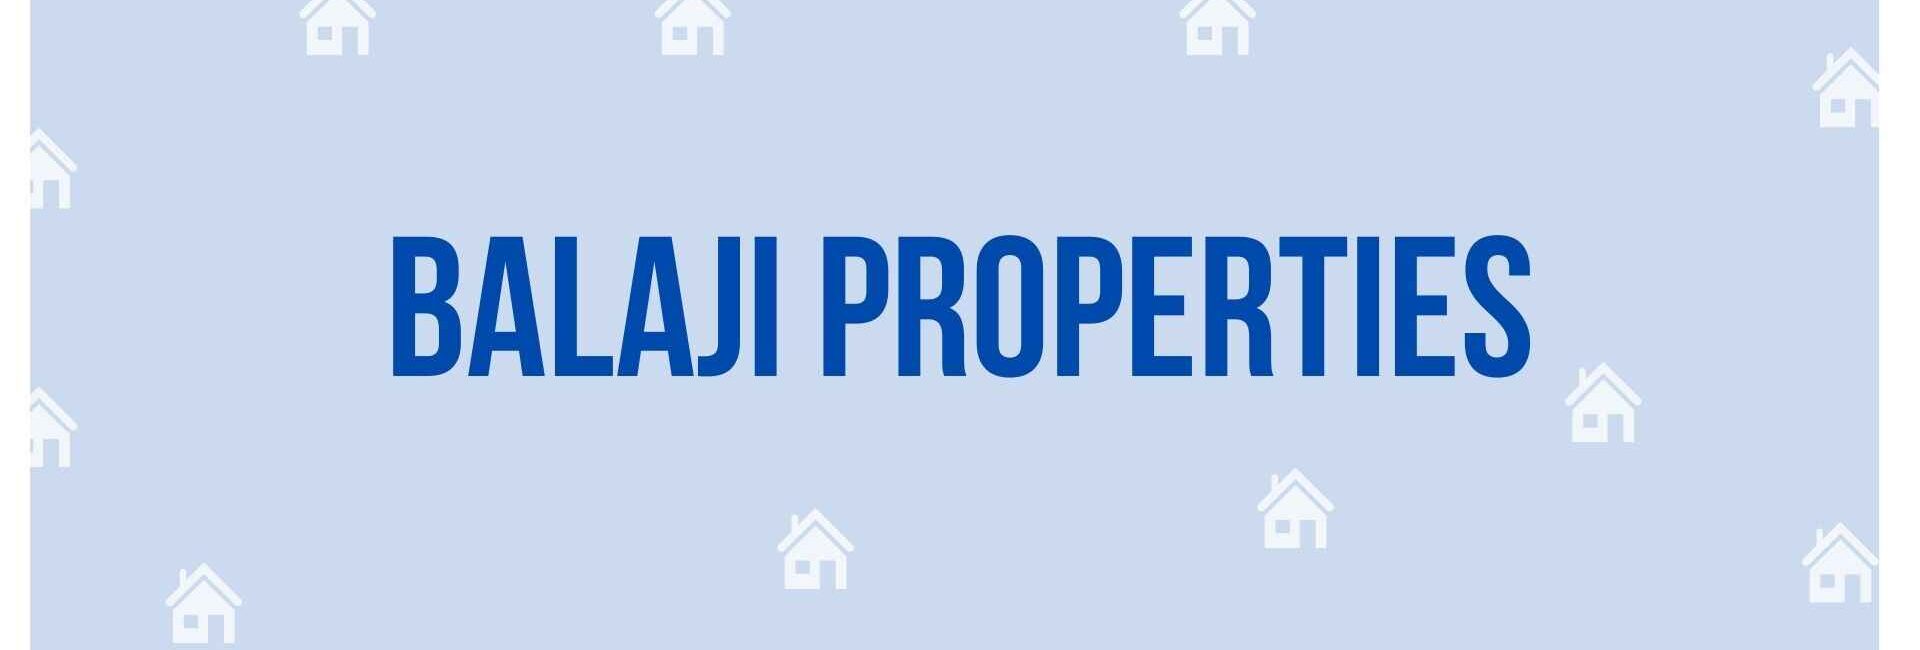 Balaji Properties - Property Dealer in Noida